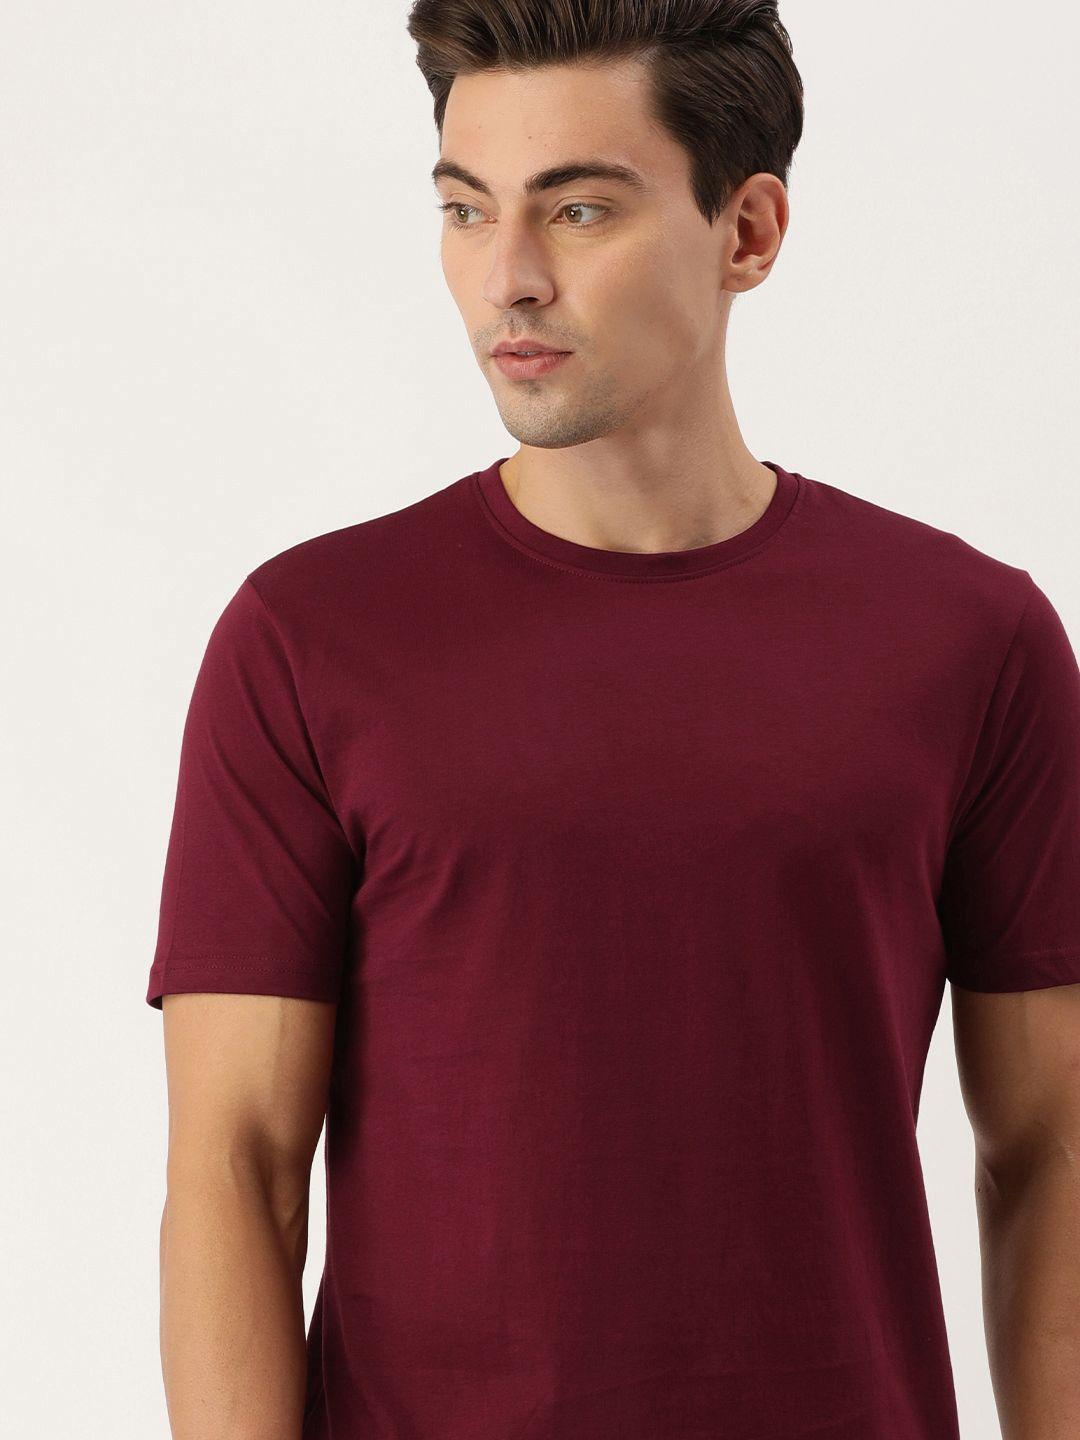 ivoc men maroon round neck cotton t-shirt